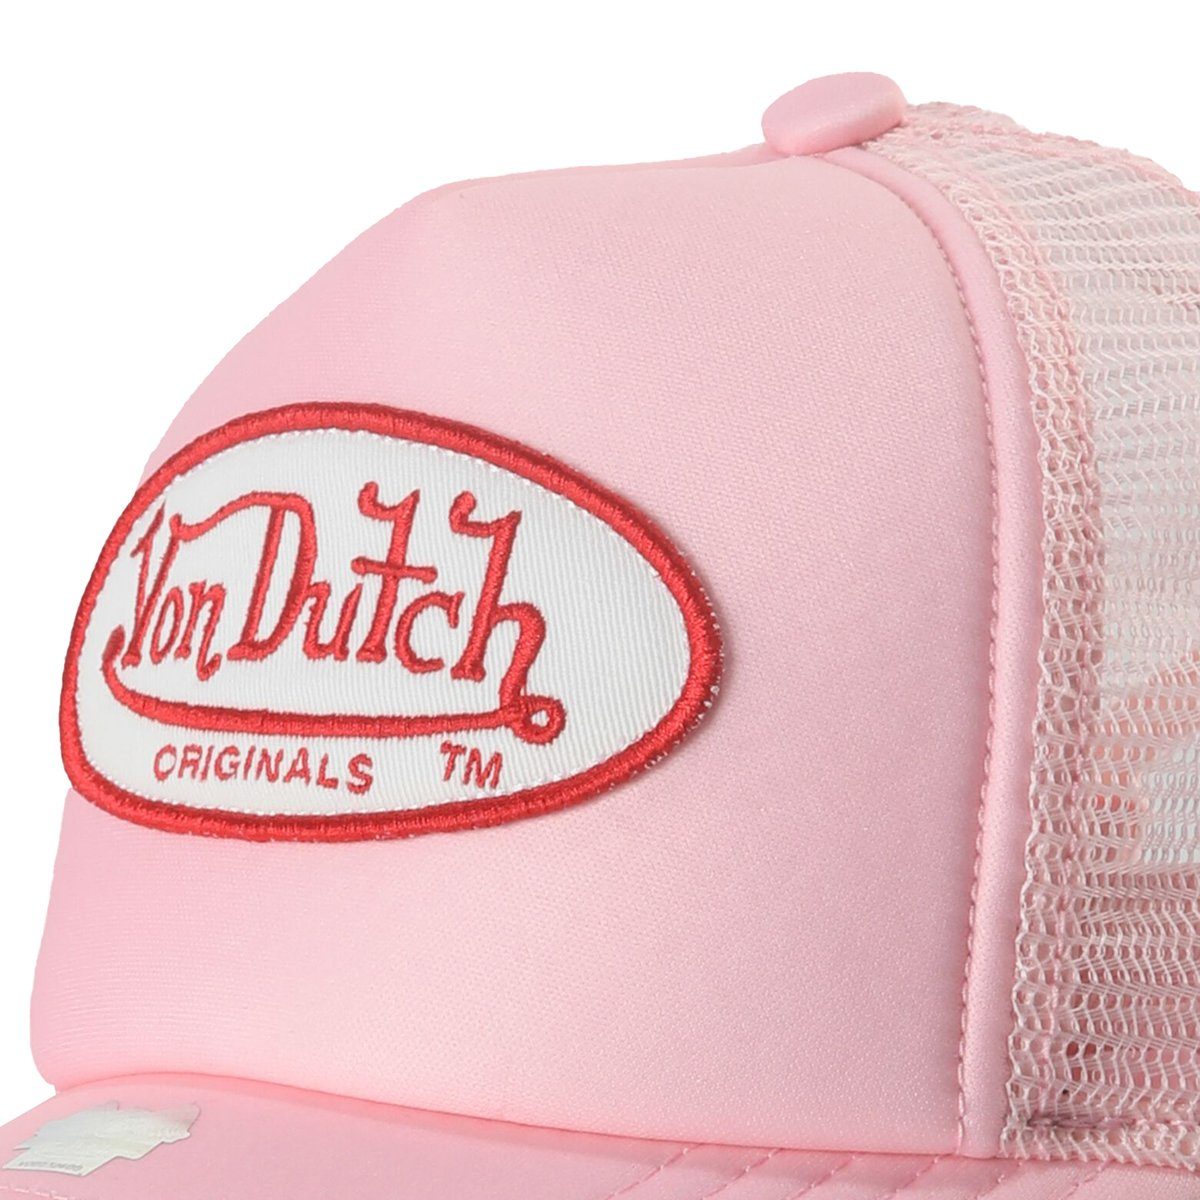 Von Dutch TRUCKER TAMPA UNISEX - Cap - pink/pink/pink 